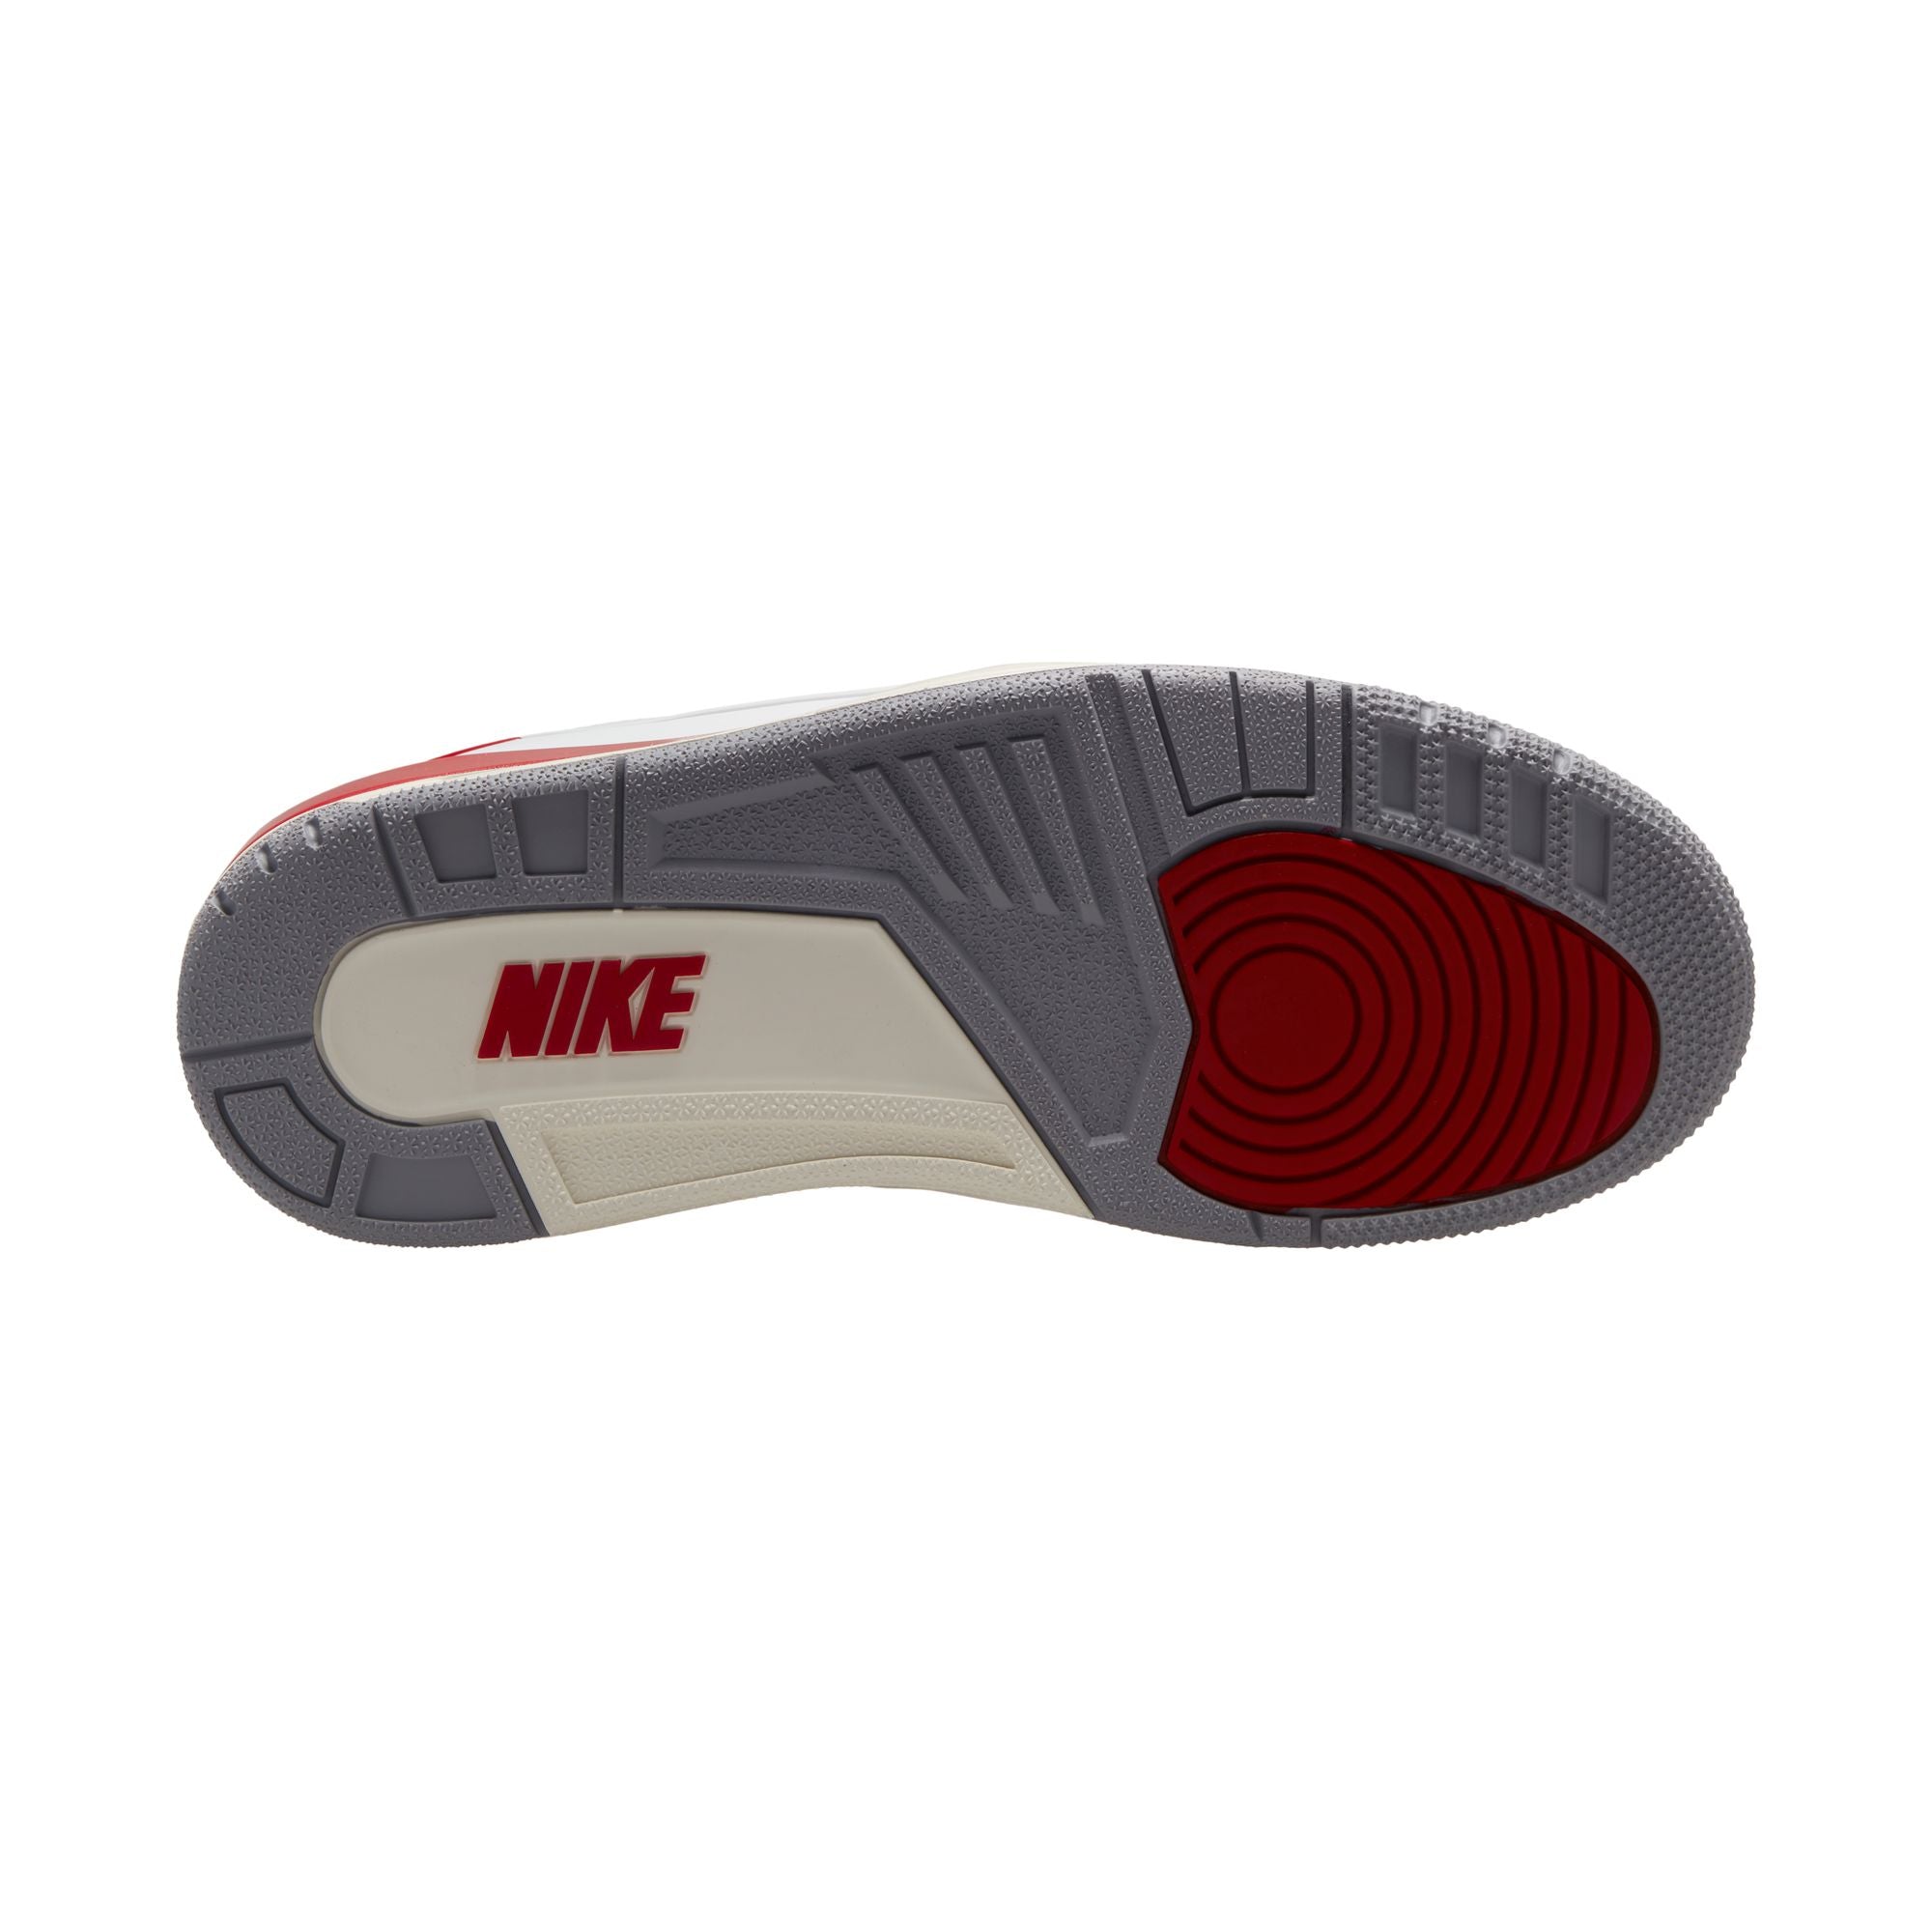 Nike Air Jordan 2/3 Retro Low OG